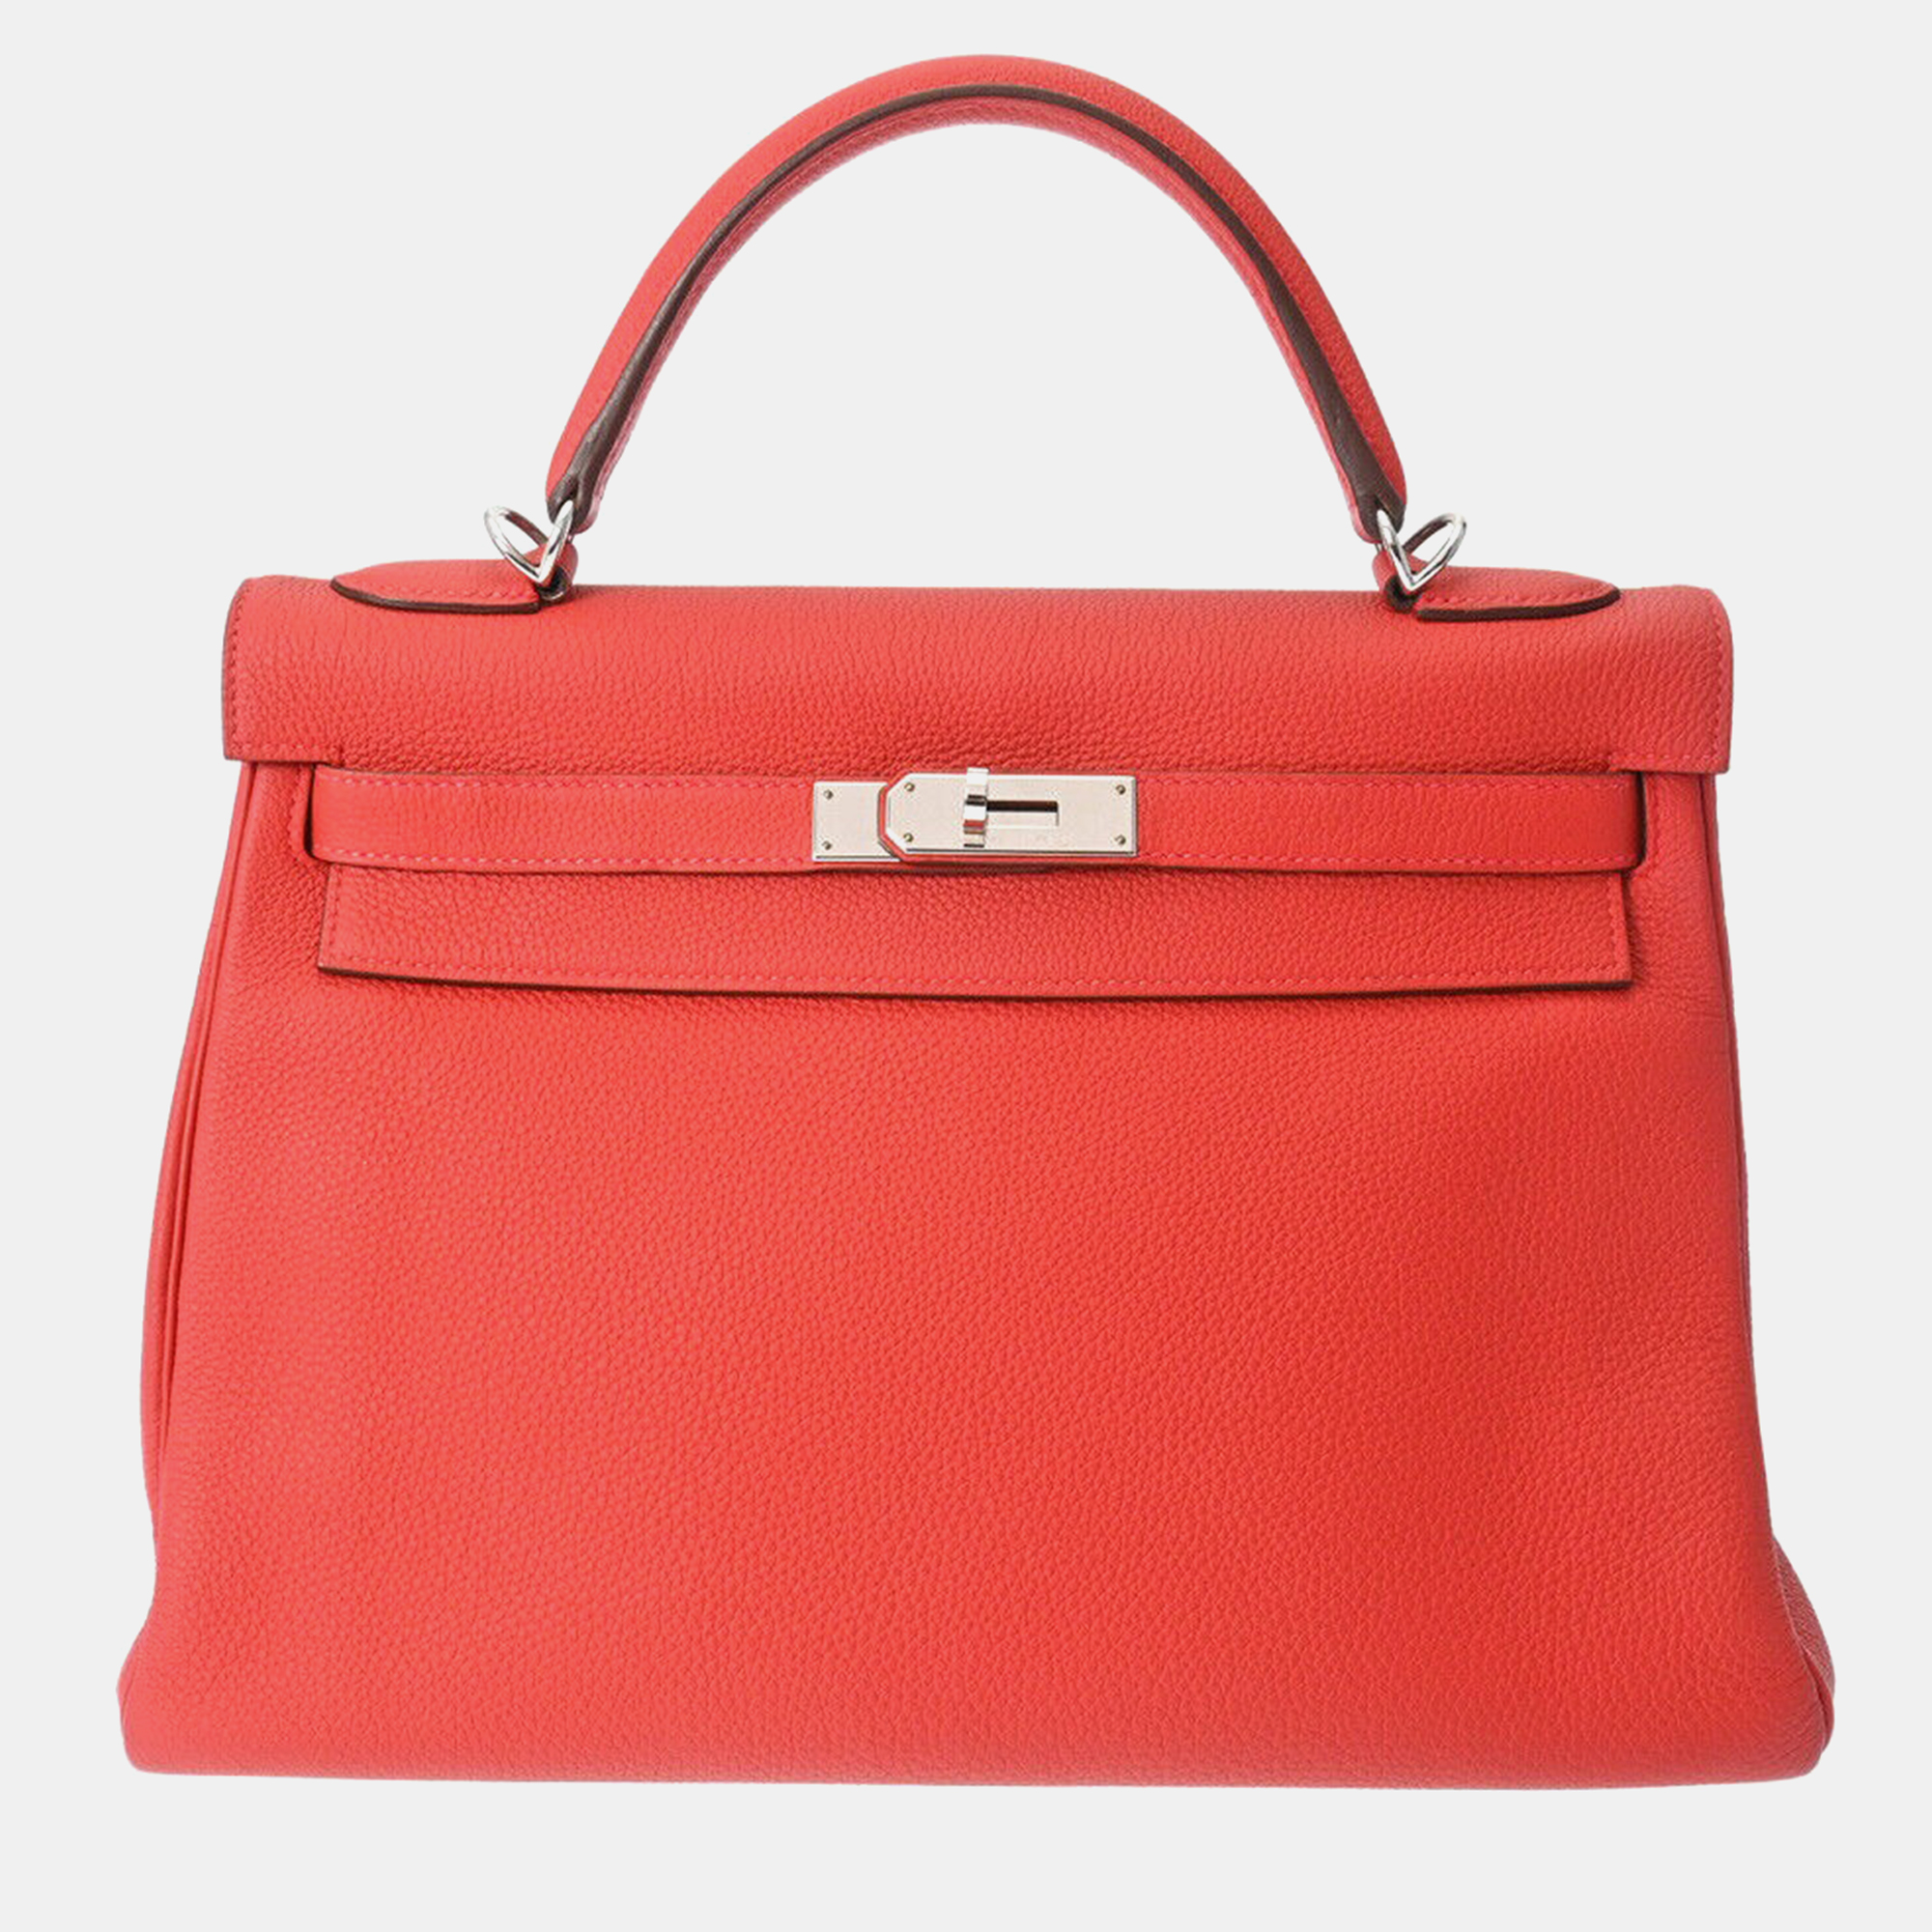 Pre-owned Hermes Red Taurillon Clemence 32 Kelly Retourne Handbag